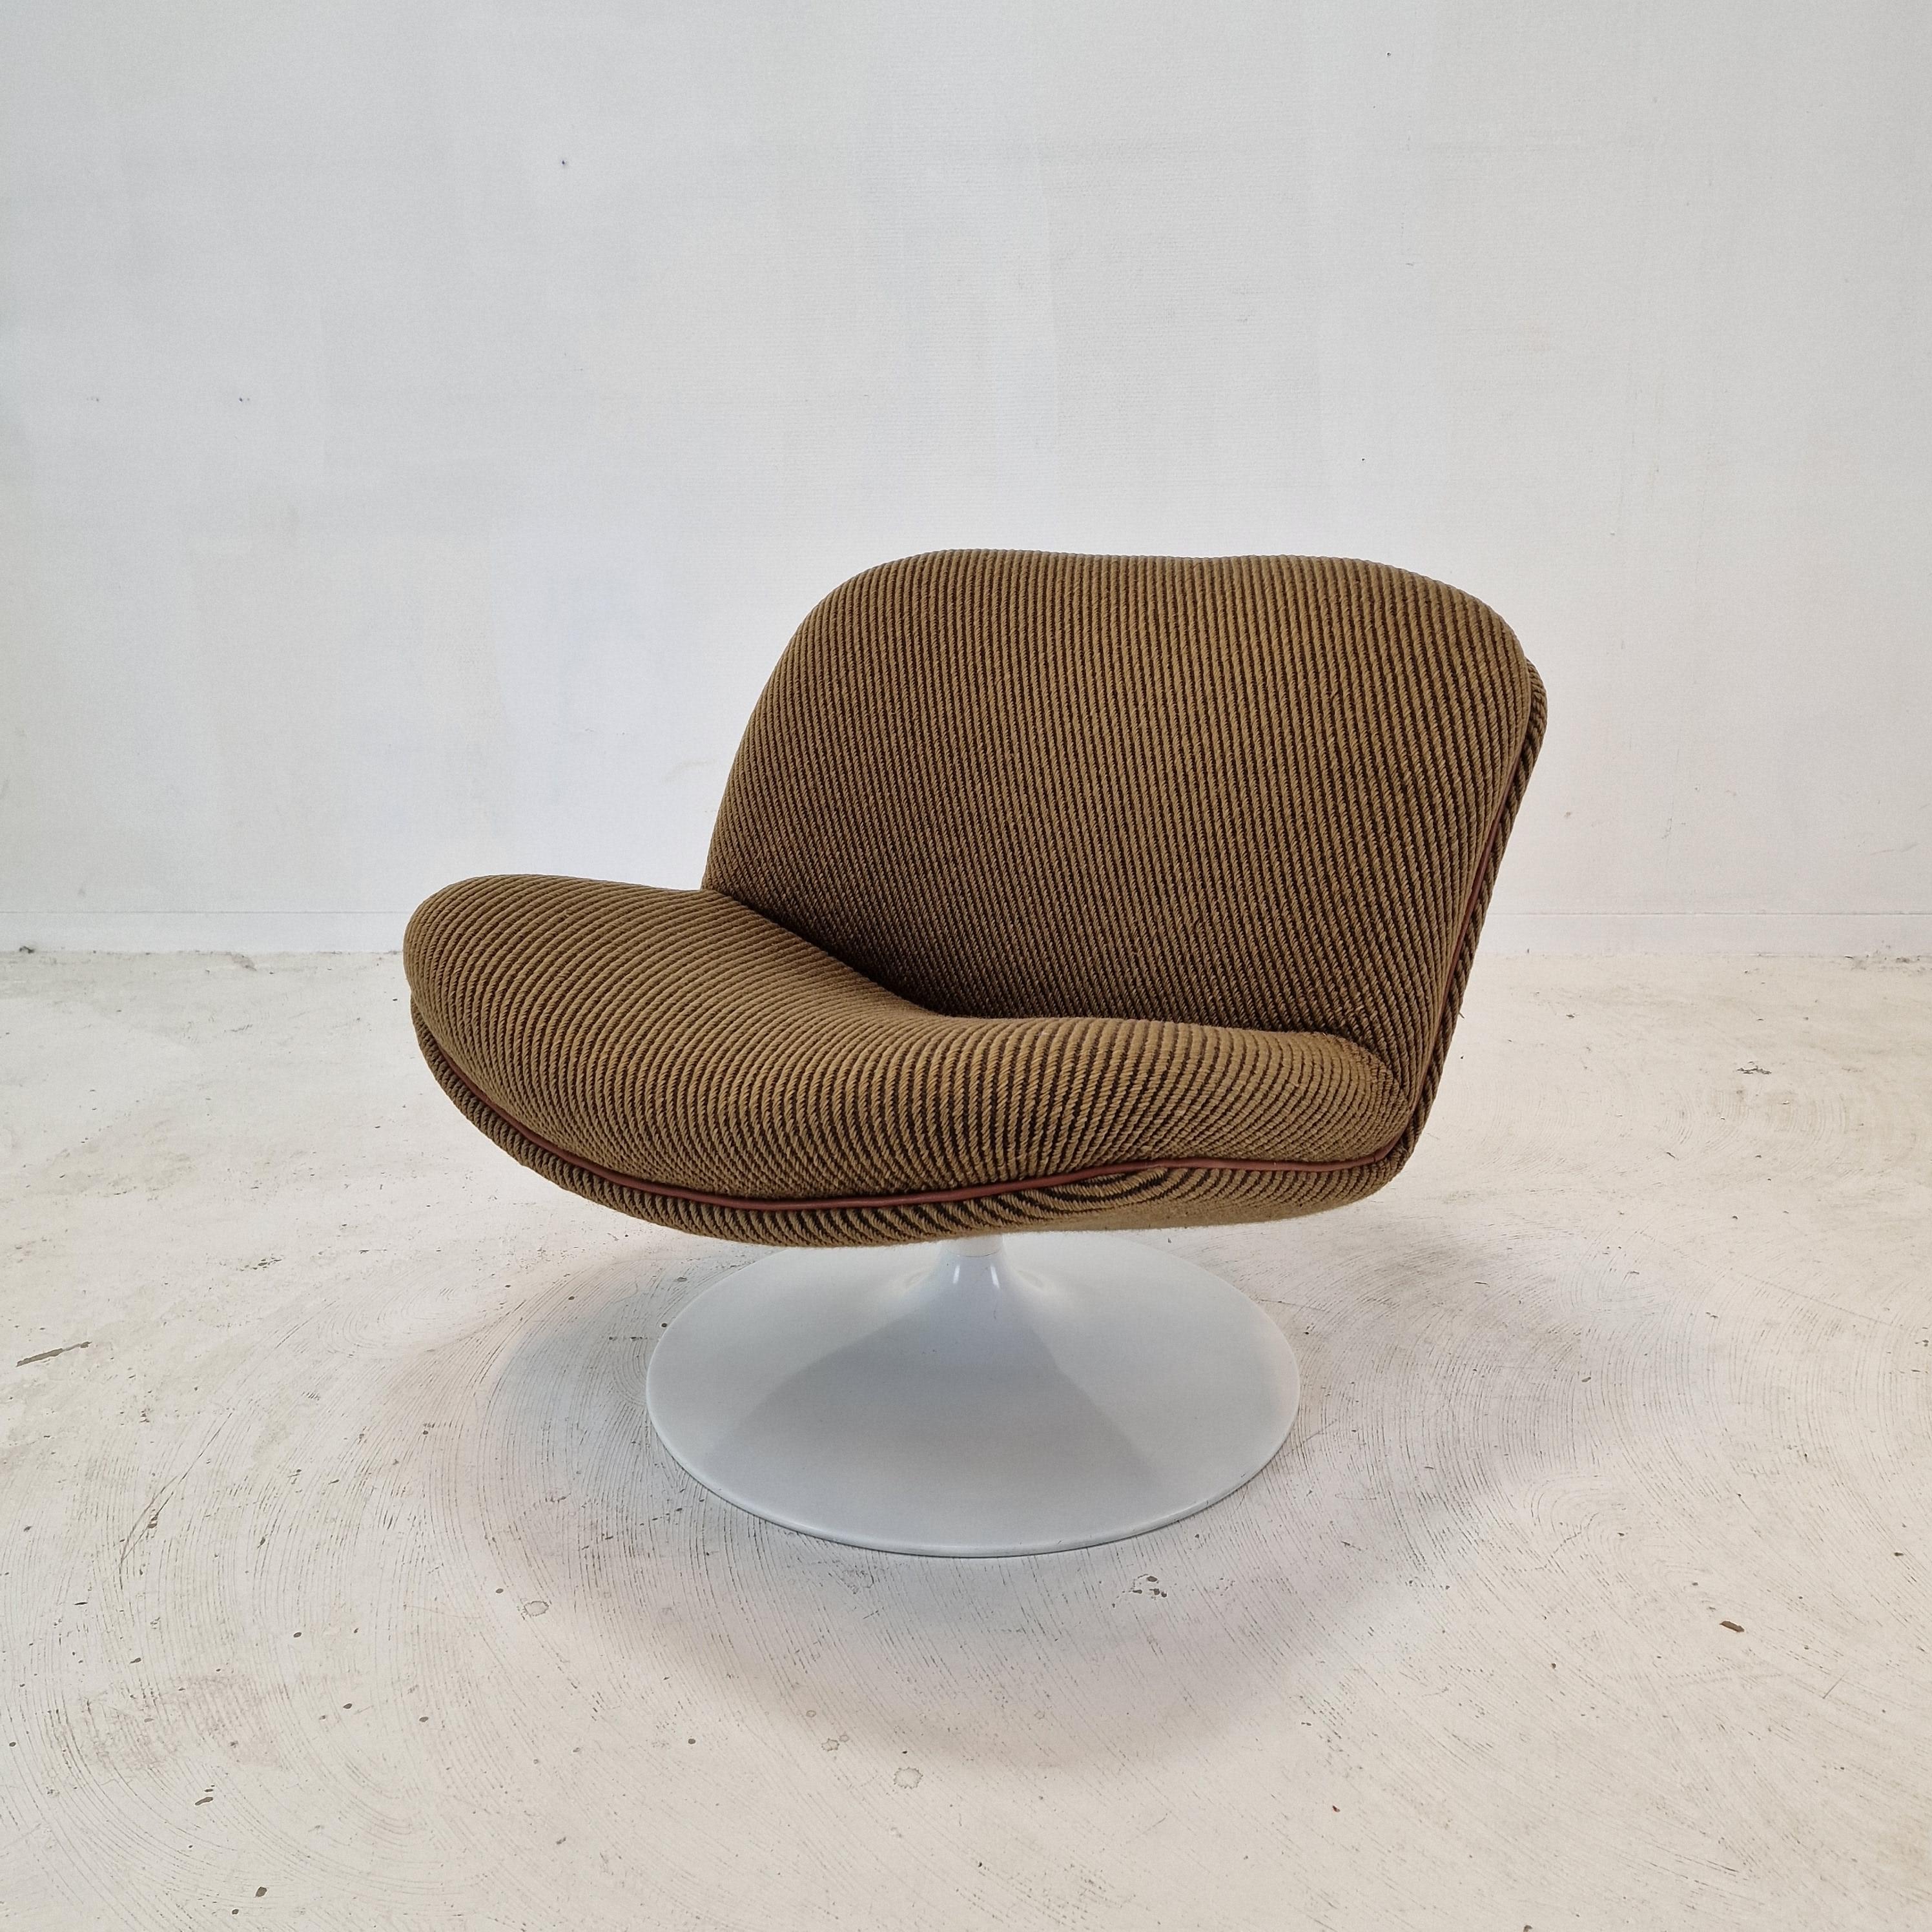 Sehr hübscher und bequemer 508 Lounge Chair, entworfen von dem berühmten Geoffrey Harcourt für Artifort in den 70er Jahren.

Sehr stabiler Holzrahmen mit einem großen drehbaren Metallfuß.  
Der Stuhl hat die ursprüngliche hohe Qualität Wolle Stoff,